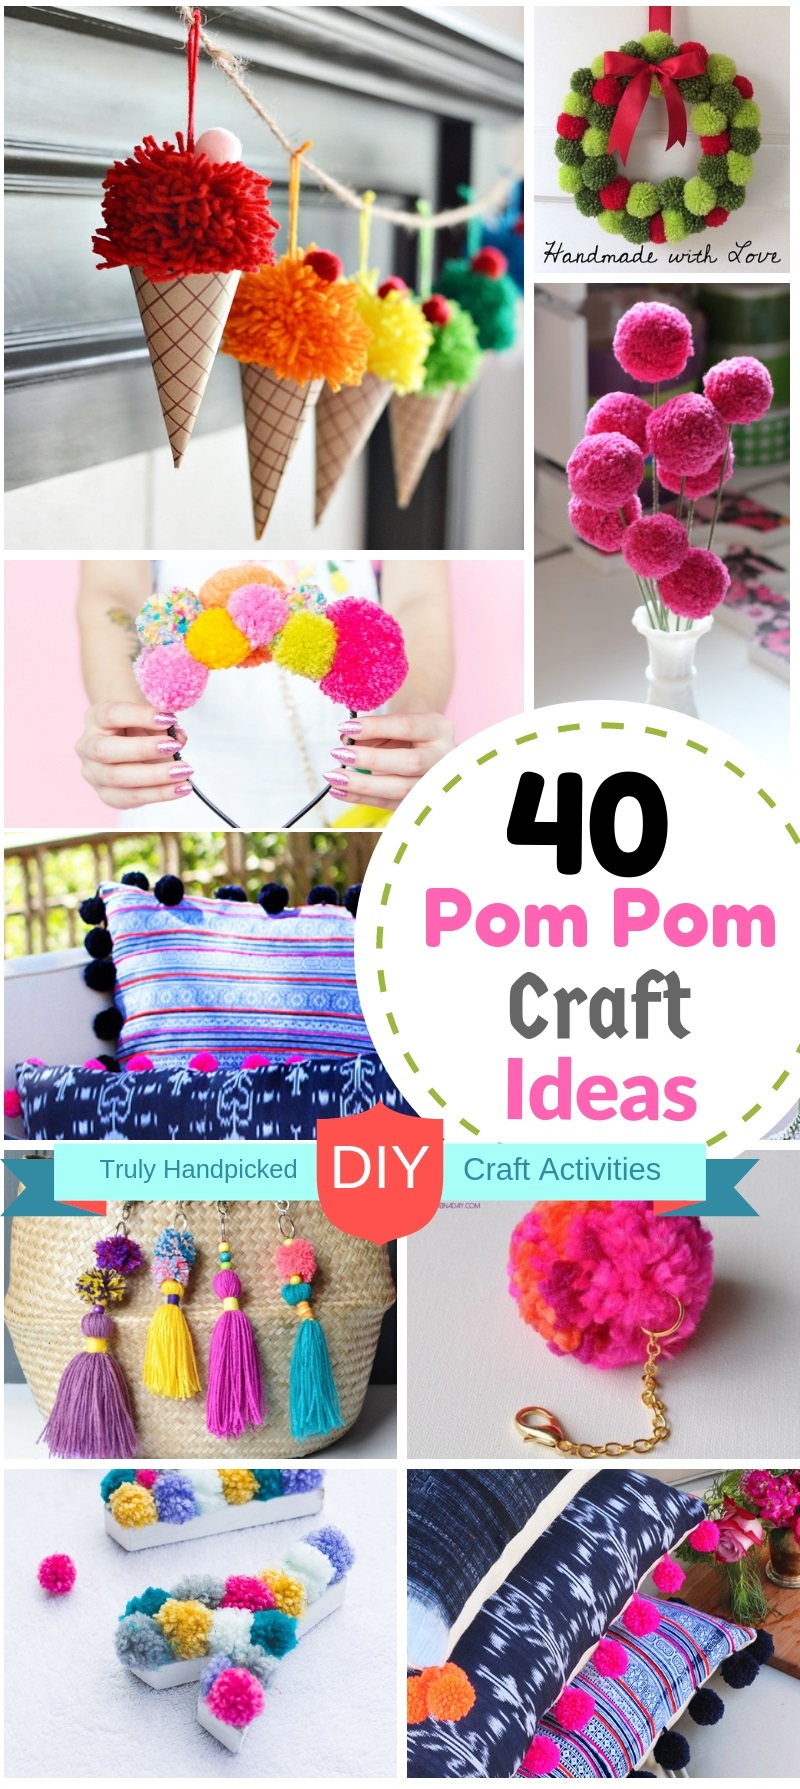 Pom Pom Crafts - Organized 31